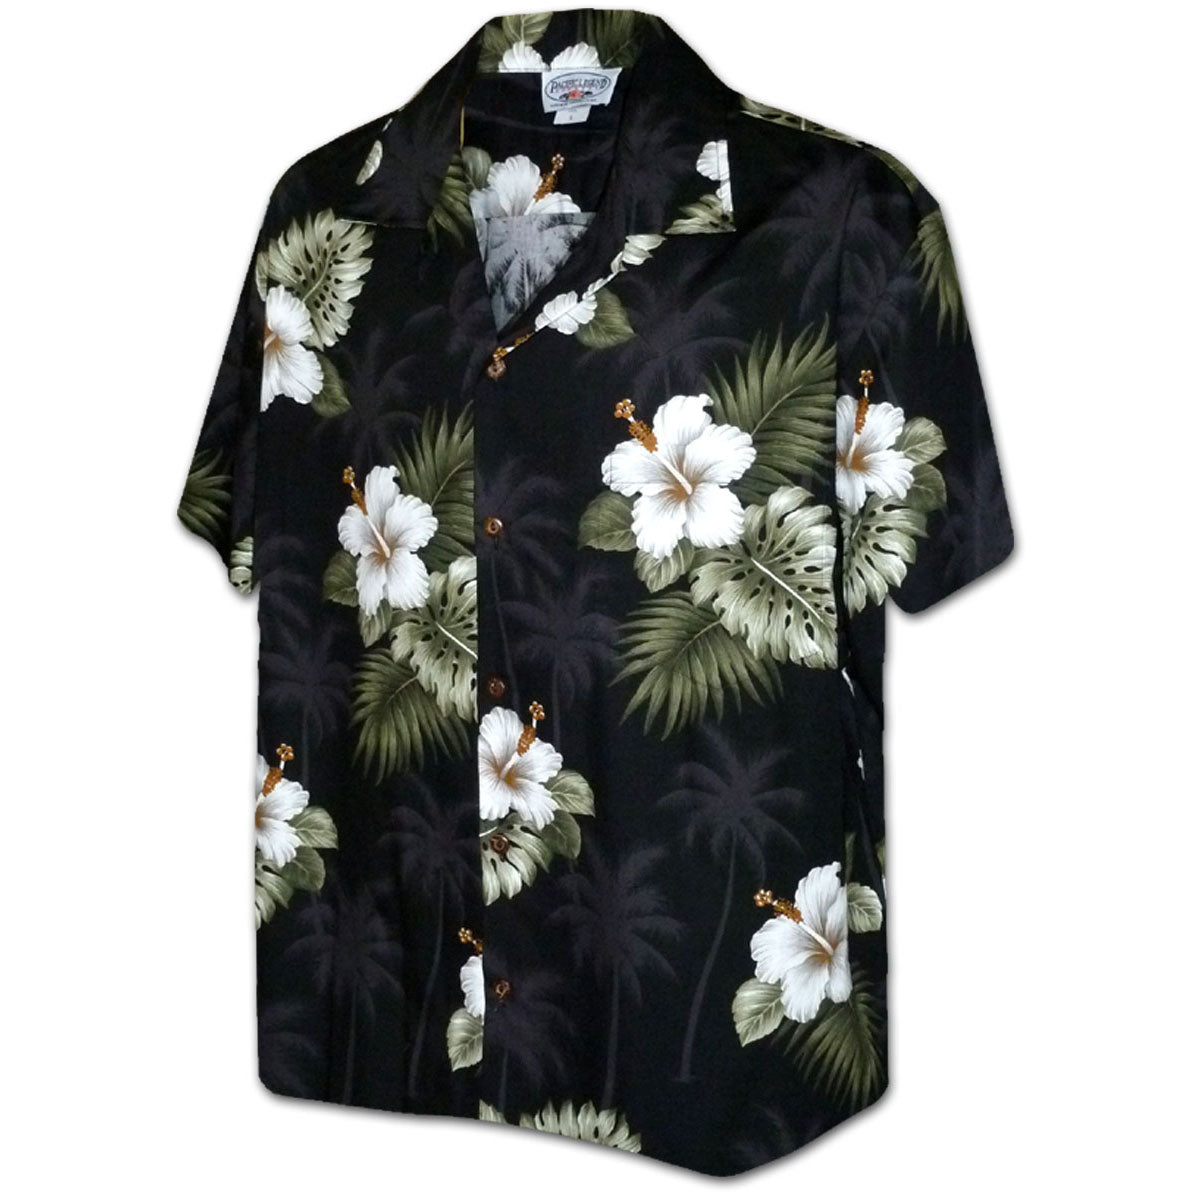 Kilauea Black Hawaiian Shirt